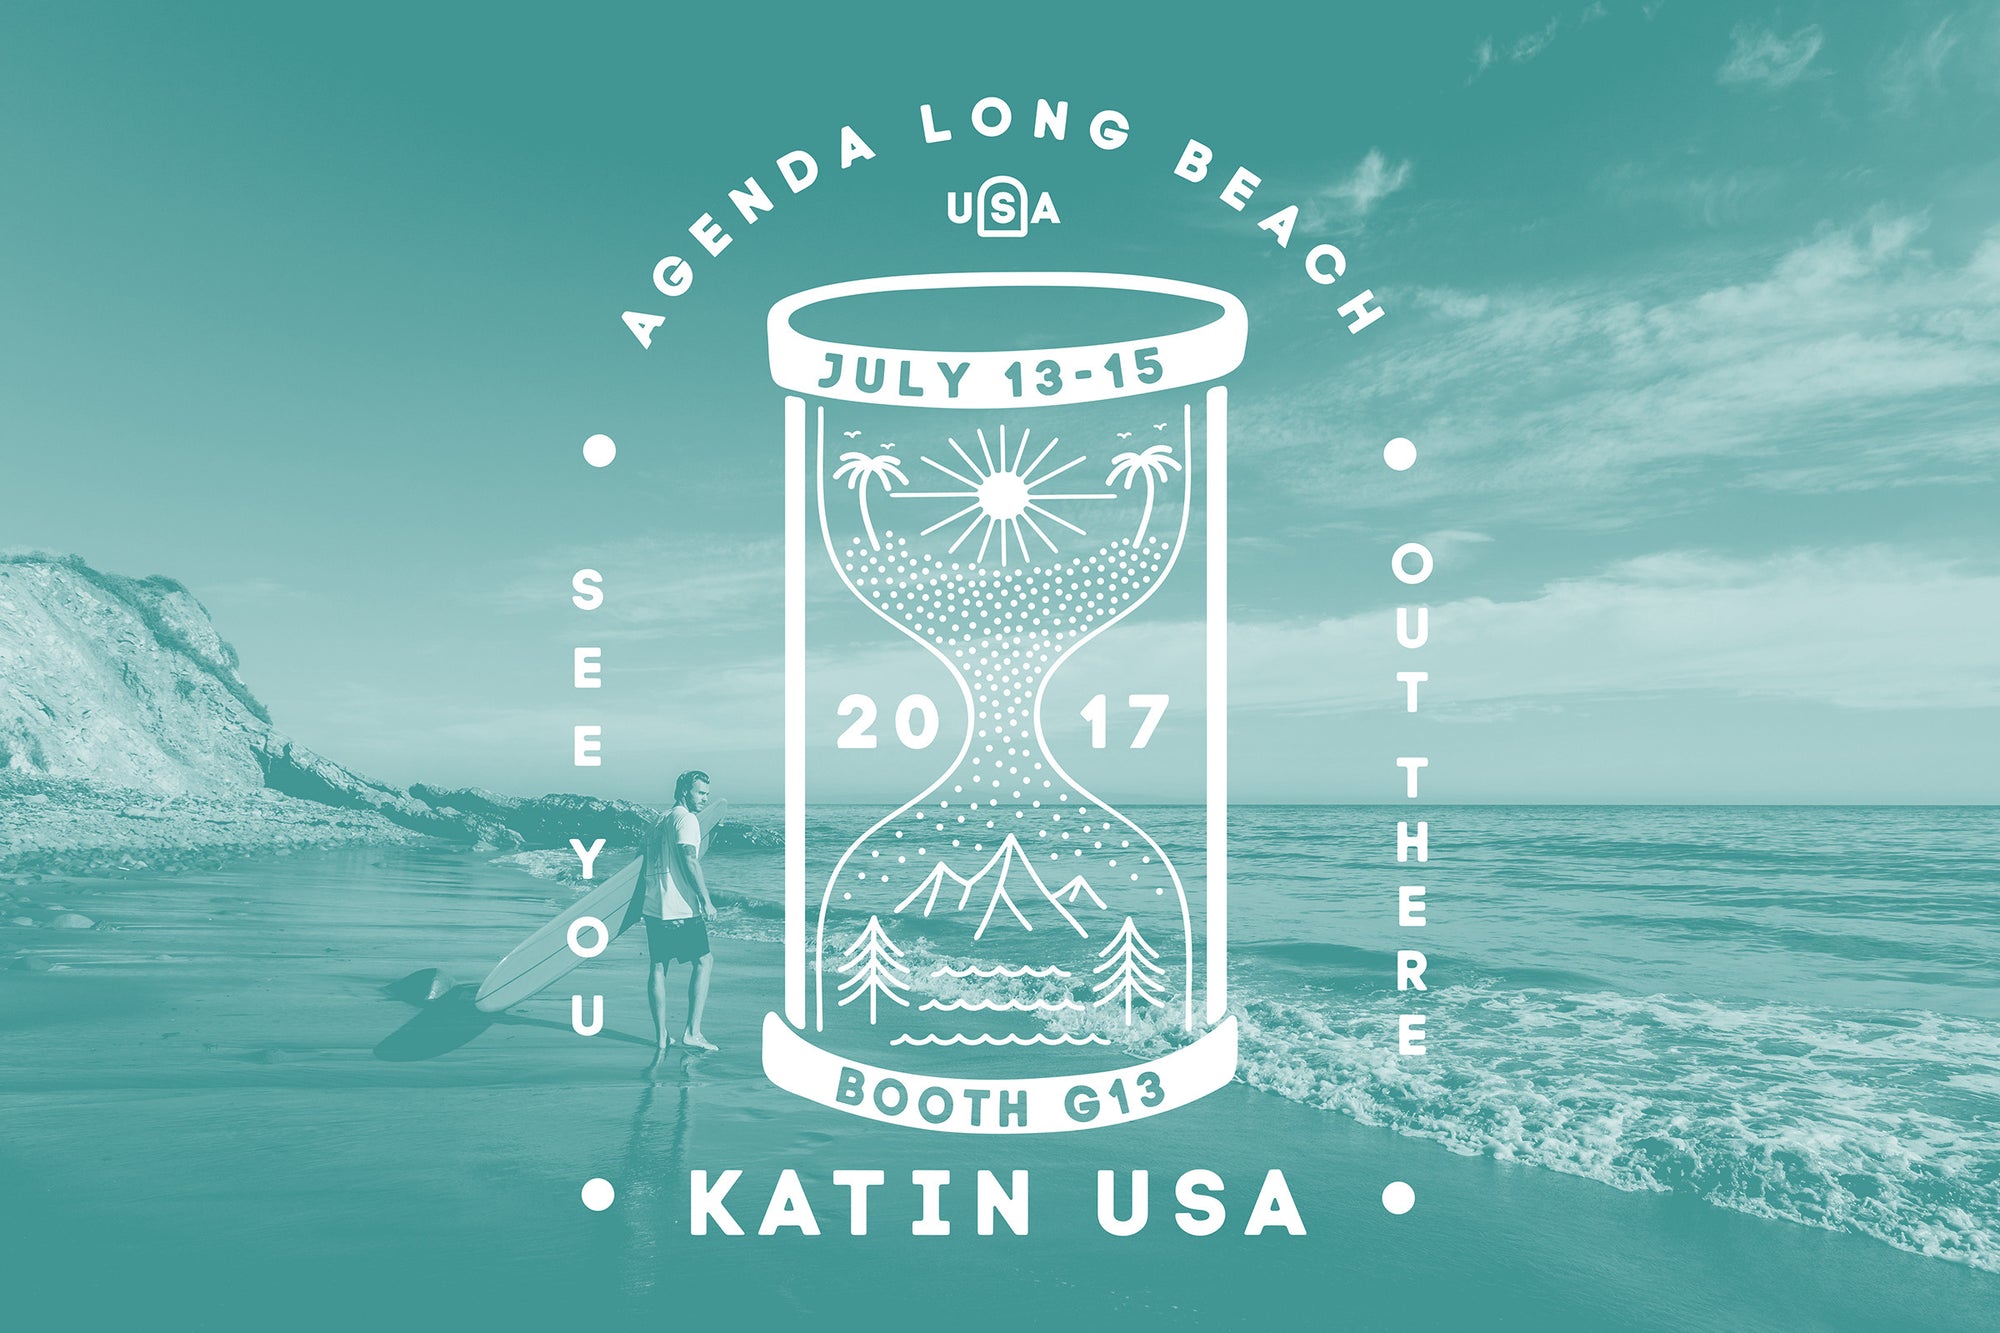 Katin Spring/Summer '18 at Agenda Show Long Beach